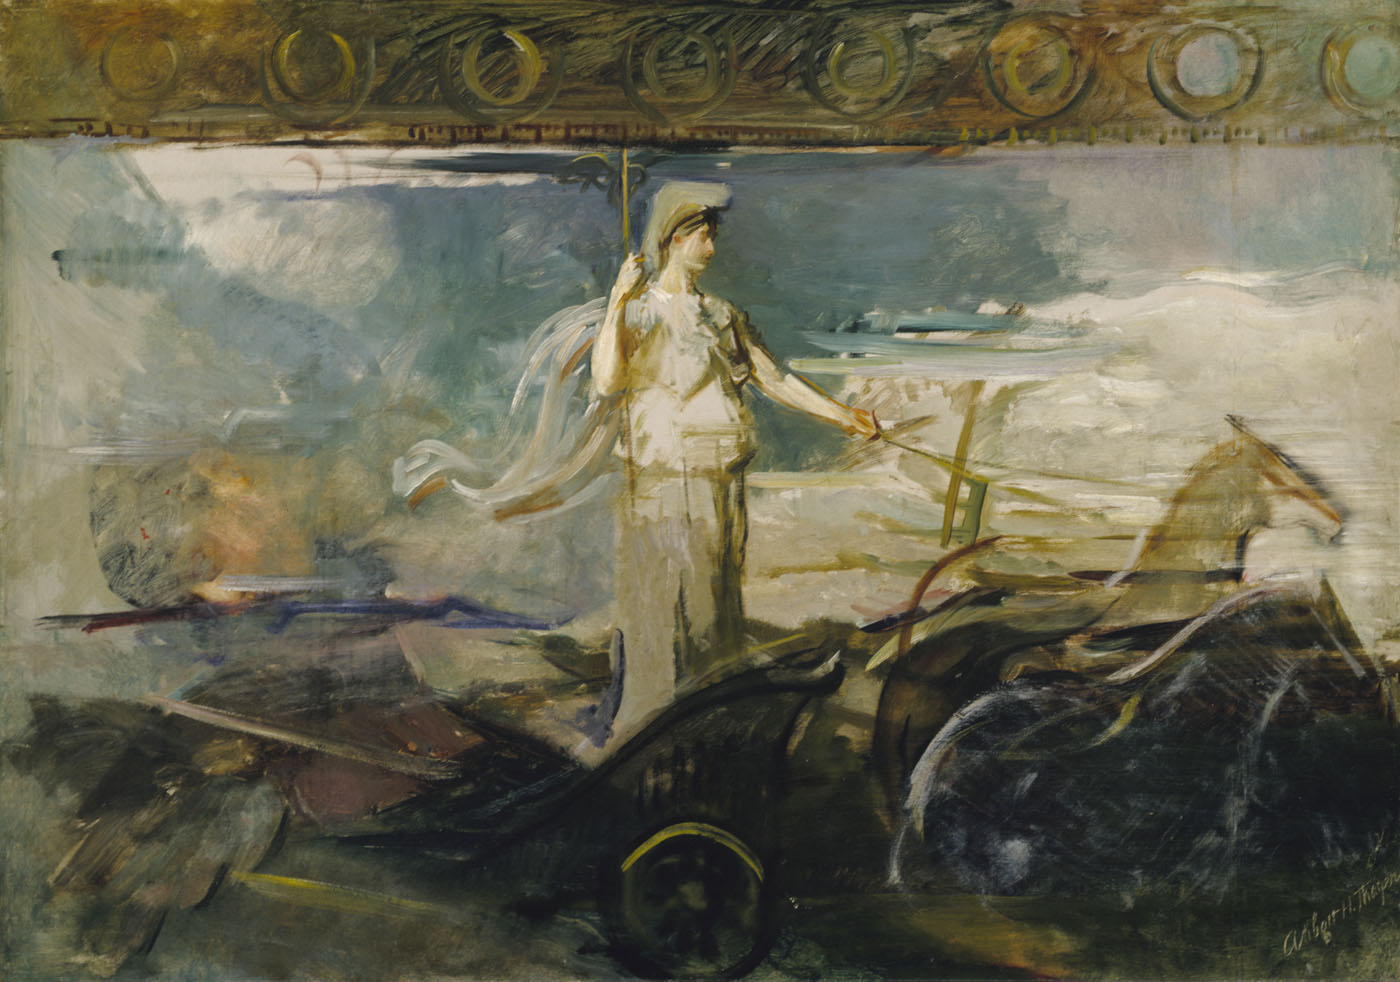 Minerva in a Chariot by Abbott Handerson Thayer